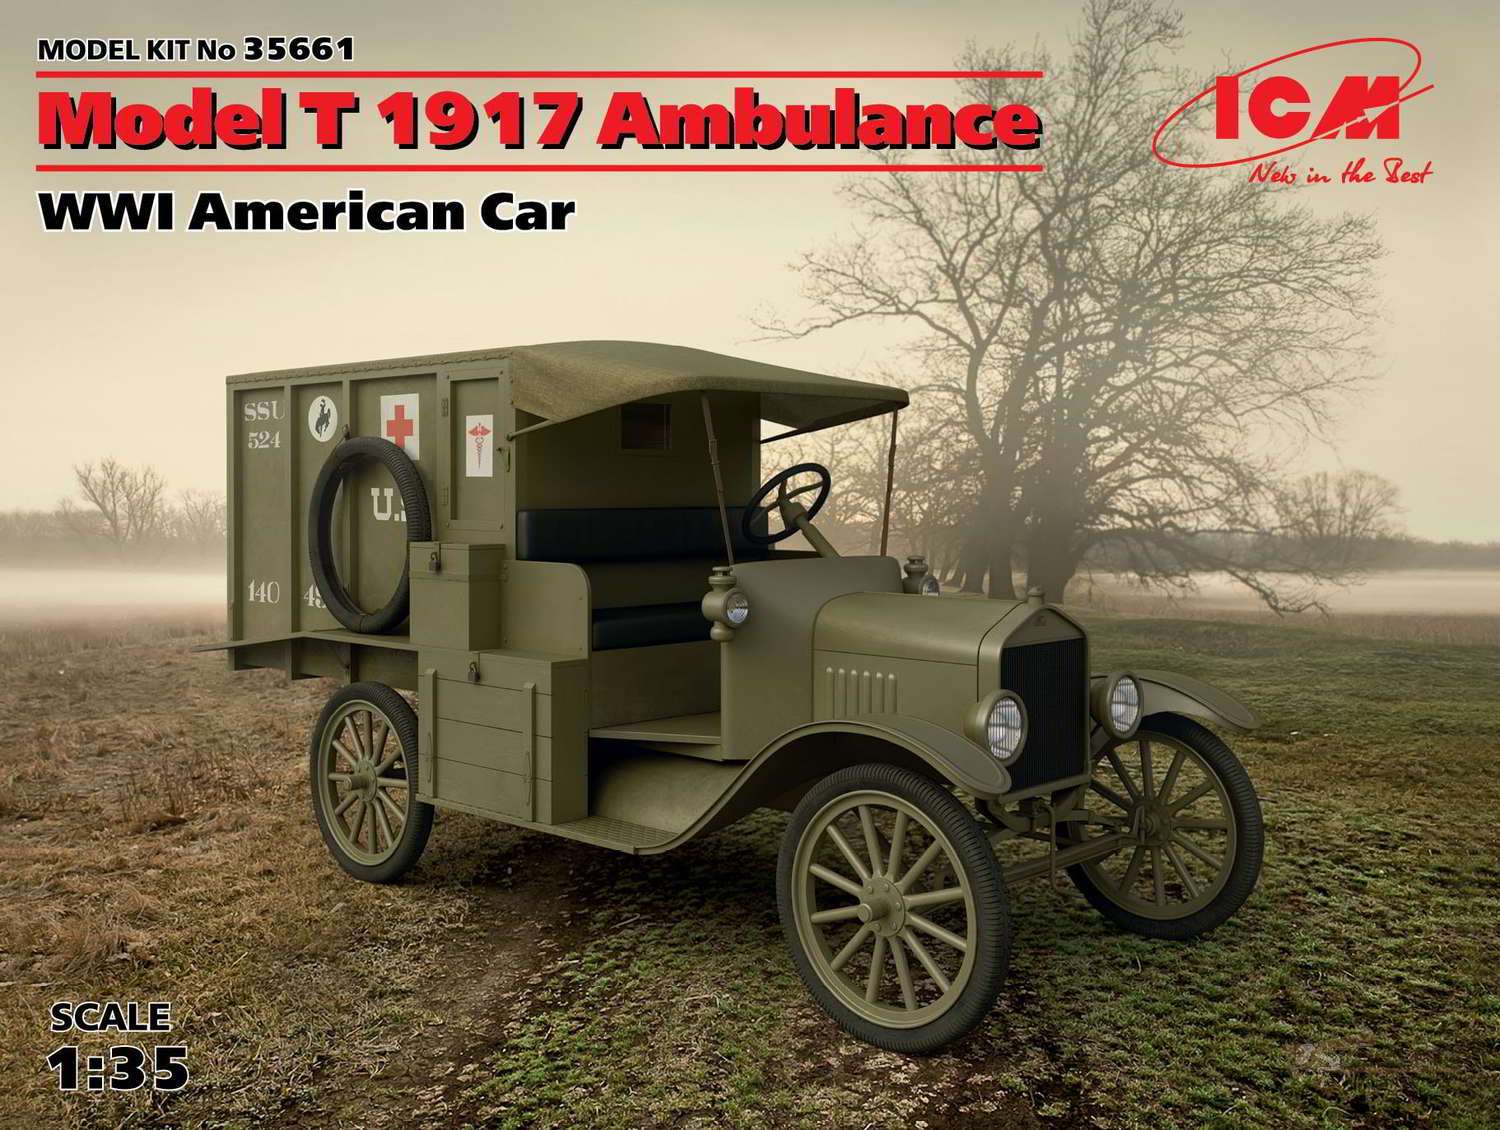 Model T 1917 Санитарный ICM. Картинка №1